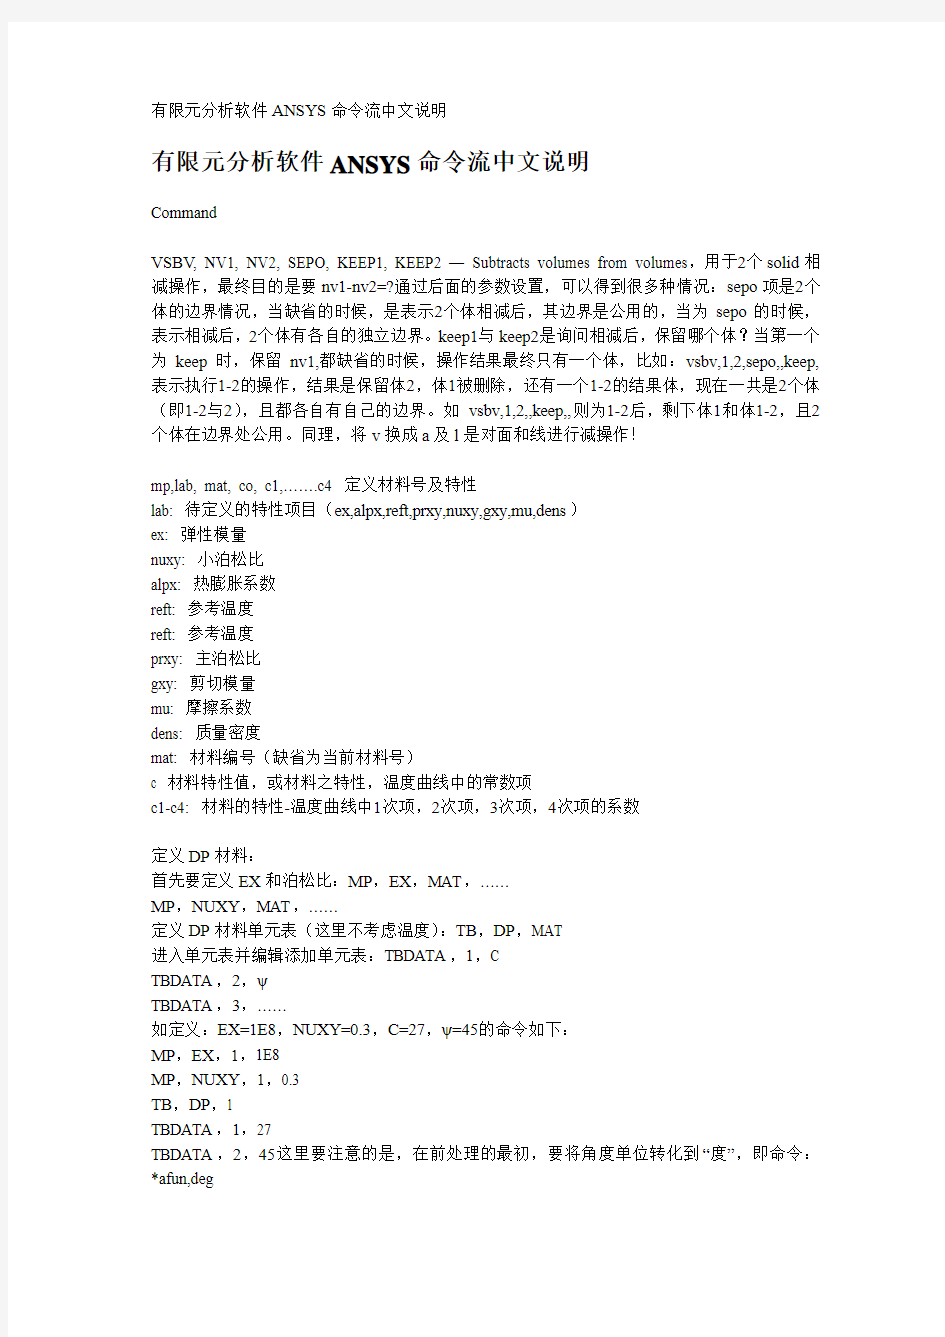 有限元分析软件ANSYS命令流中文说明